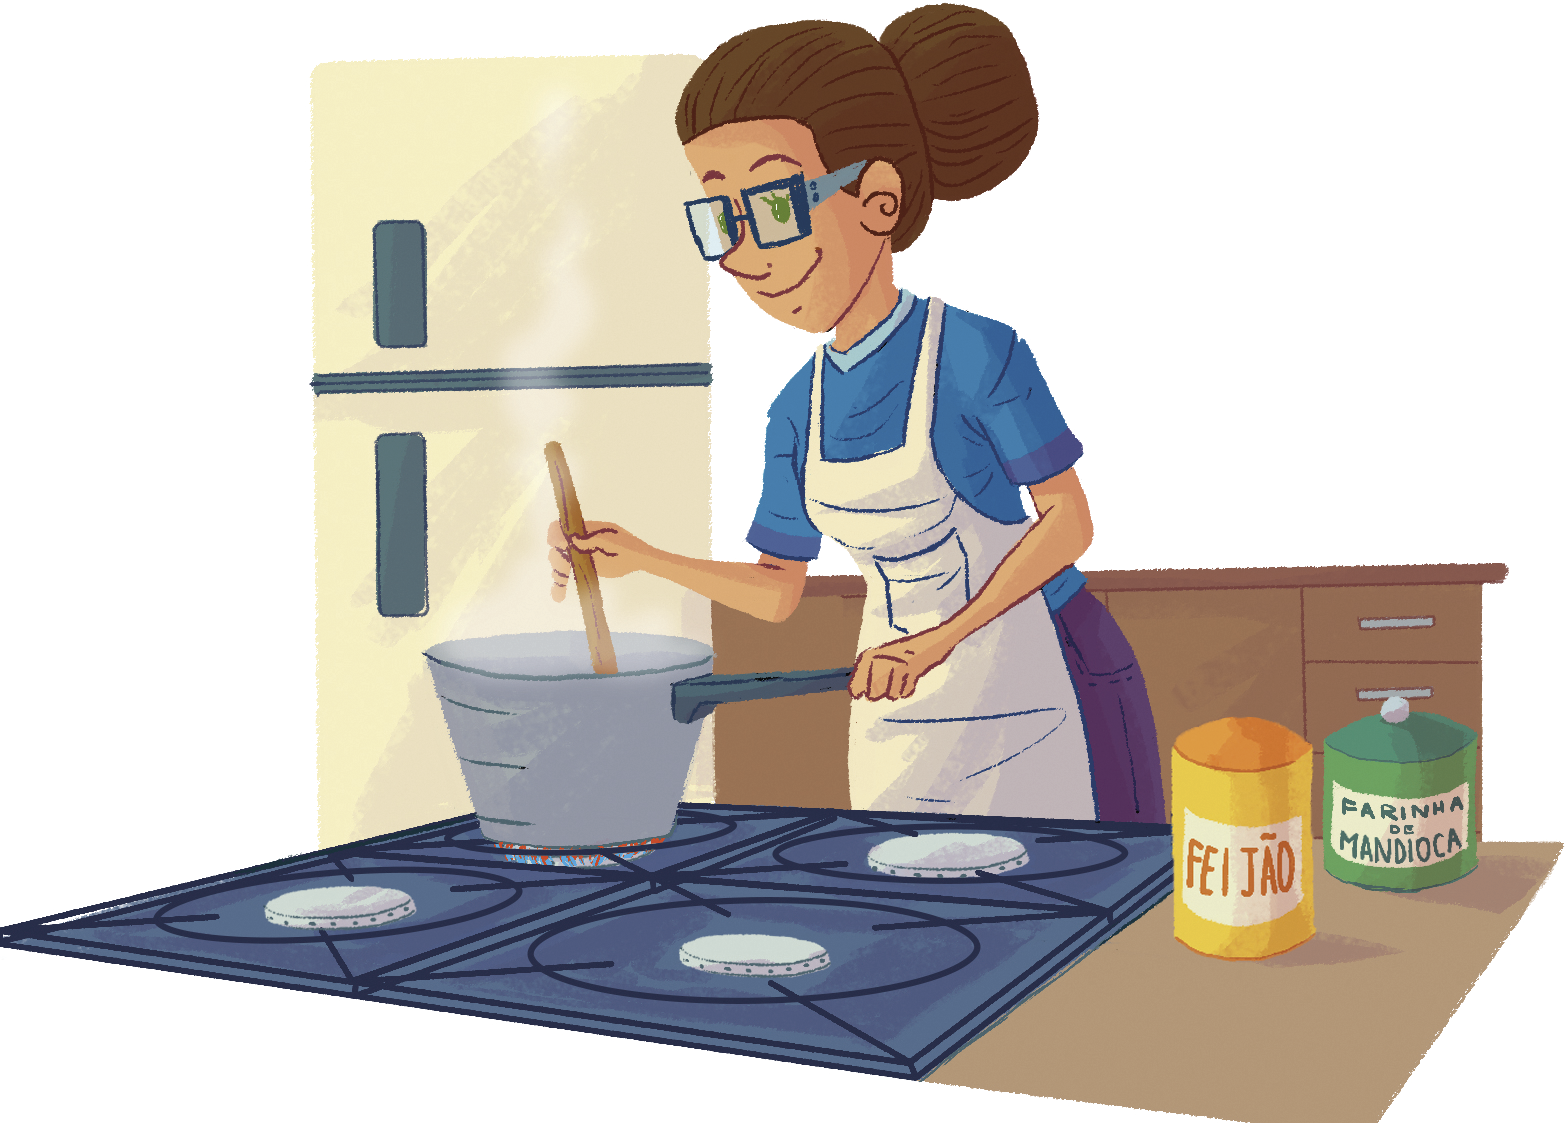 Ilustração. 
Mulher de óculos, cabelo preso para trás, blusa azul e avental branco. Ela mexe uma panela no fogão. Ao lado, recipiente com feijão e farinha de mandioca.